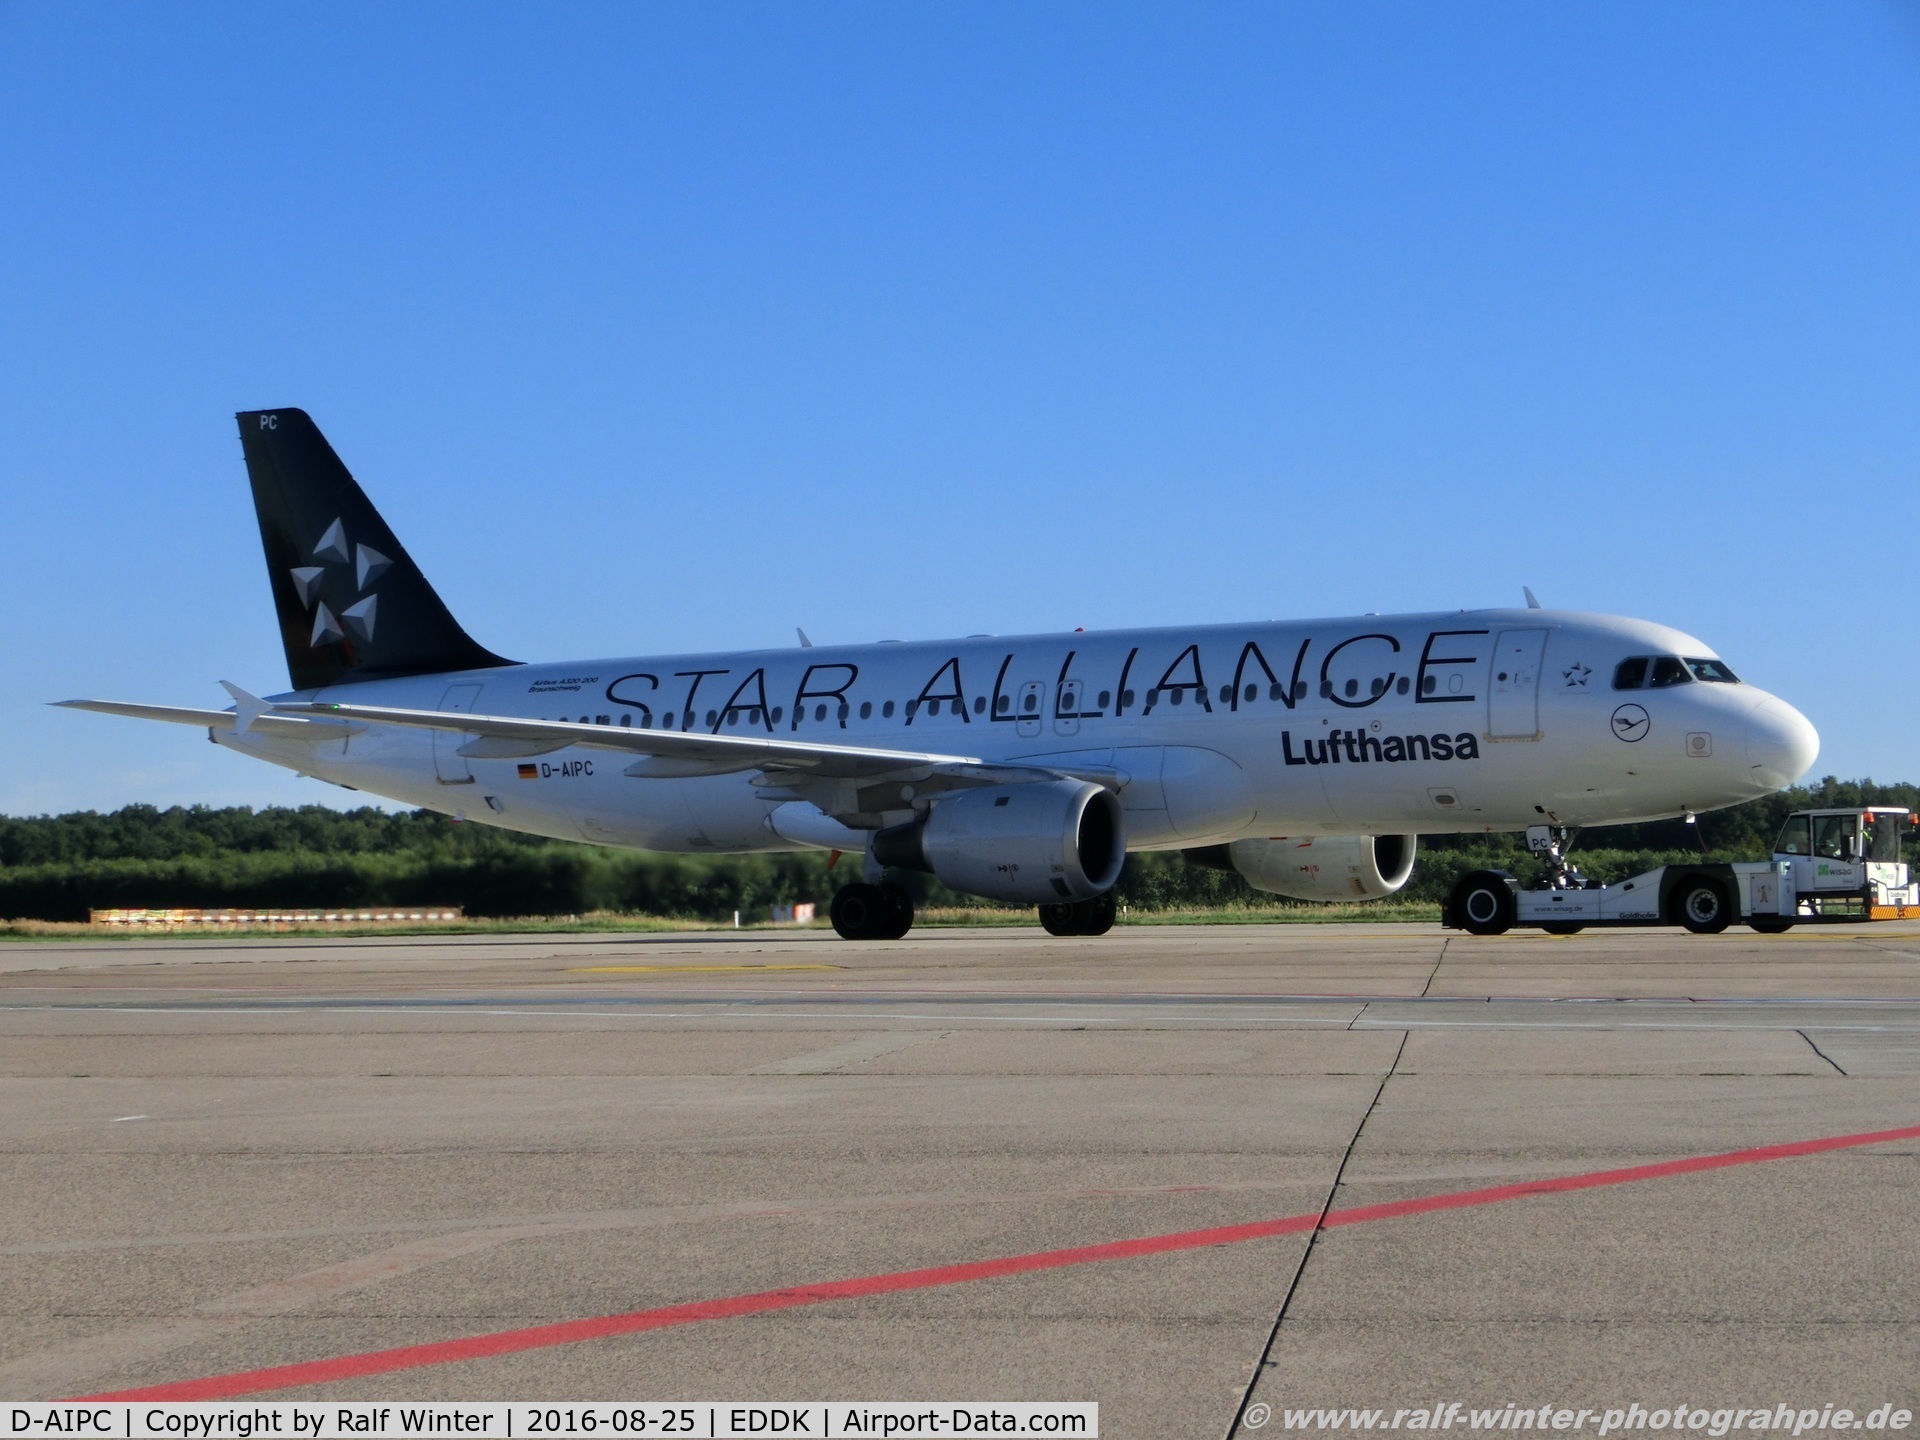 D-AIPC, 1989 Airbus A320-211 C/N 0071, Airbus A320-211 - LH DLH Lufthansa 'Braunschweig' Star Alliance Livery - 71 - D-AIPC - 25.08.2016 - CGN